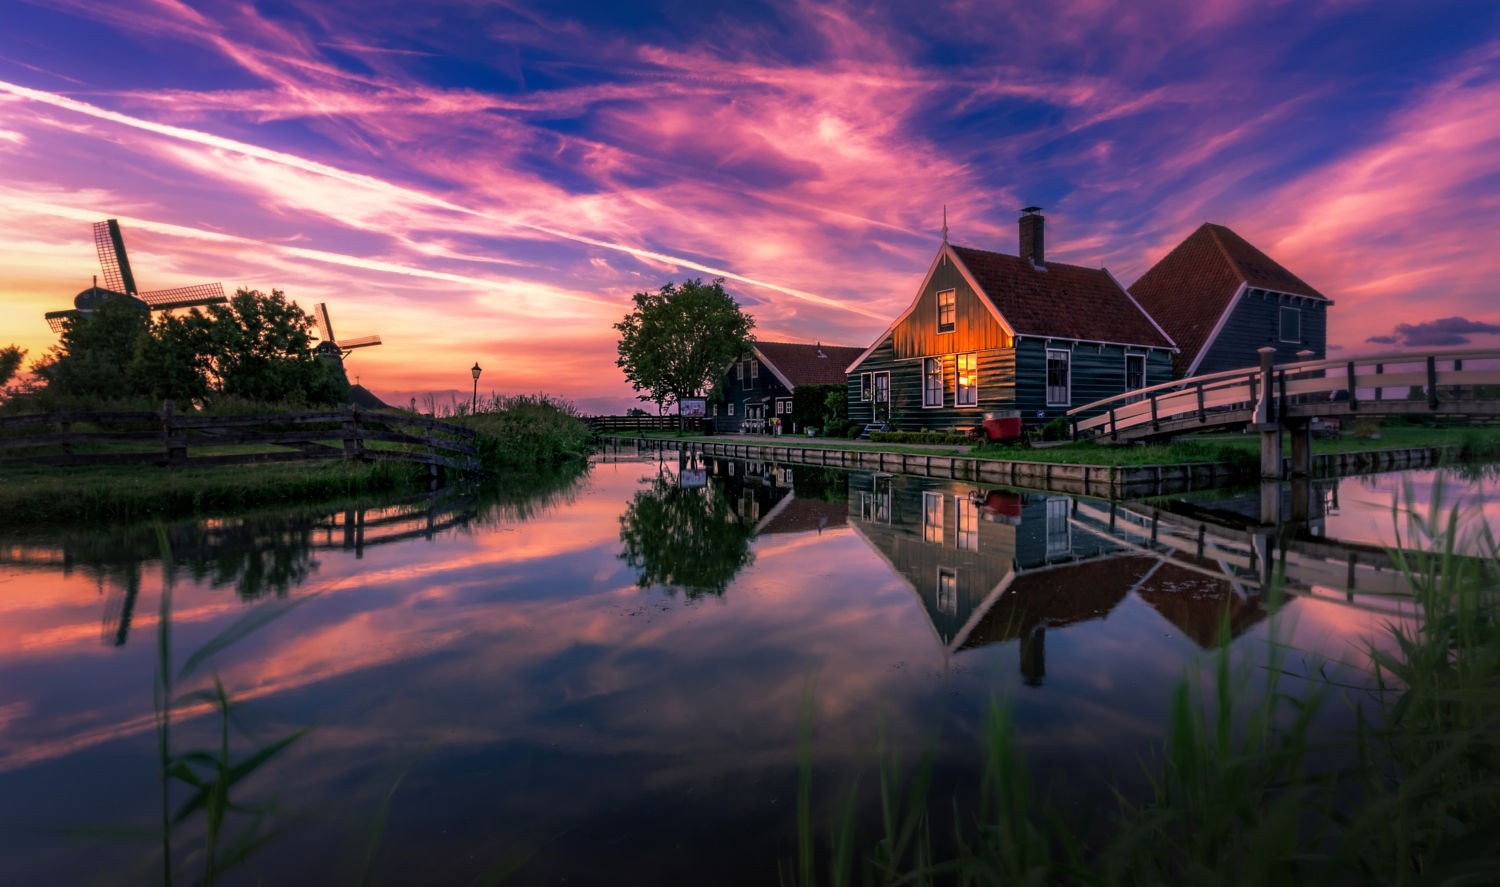 General 1500x887 nature landscape photography summer sunset house bridge canal windmill reflection Netherlands Zaanse Schans